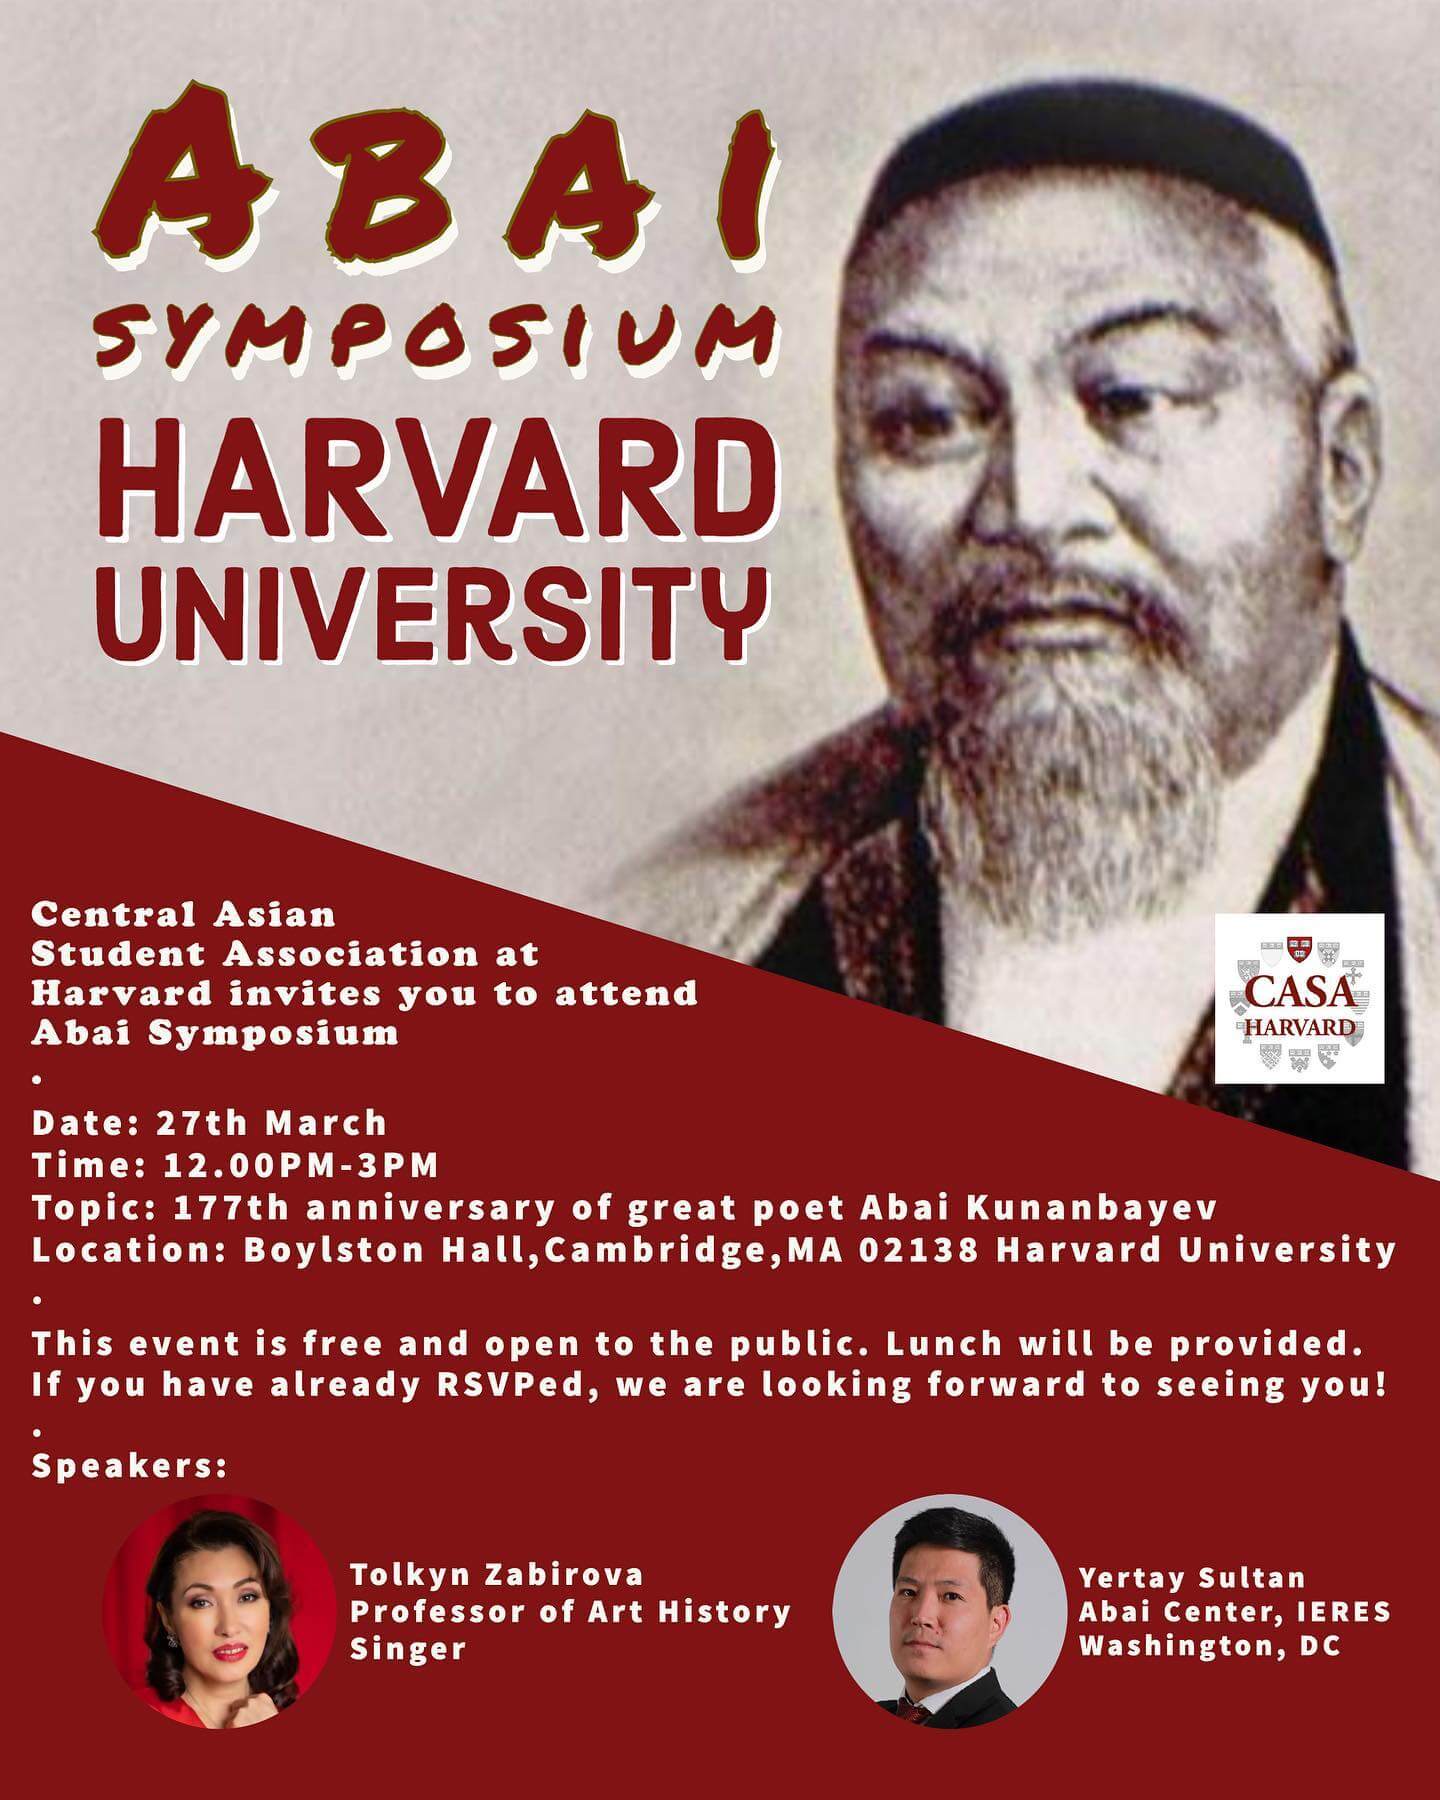 Abai symposium Harvard University